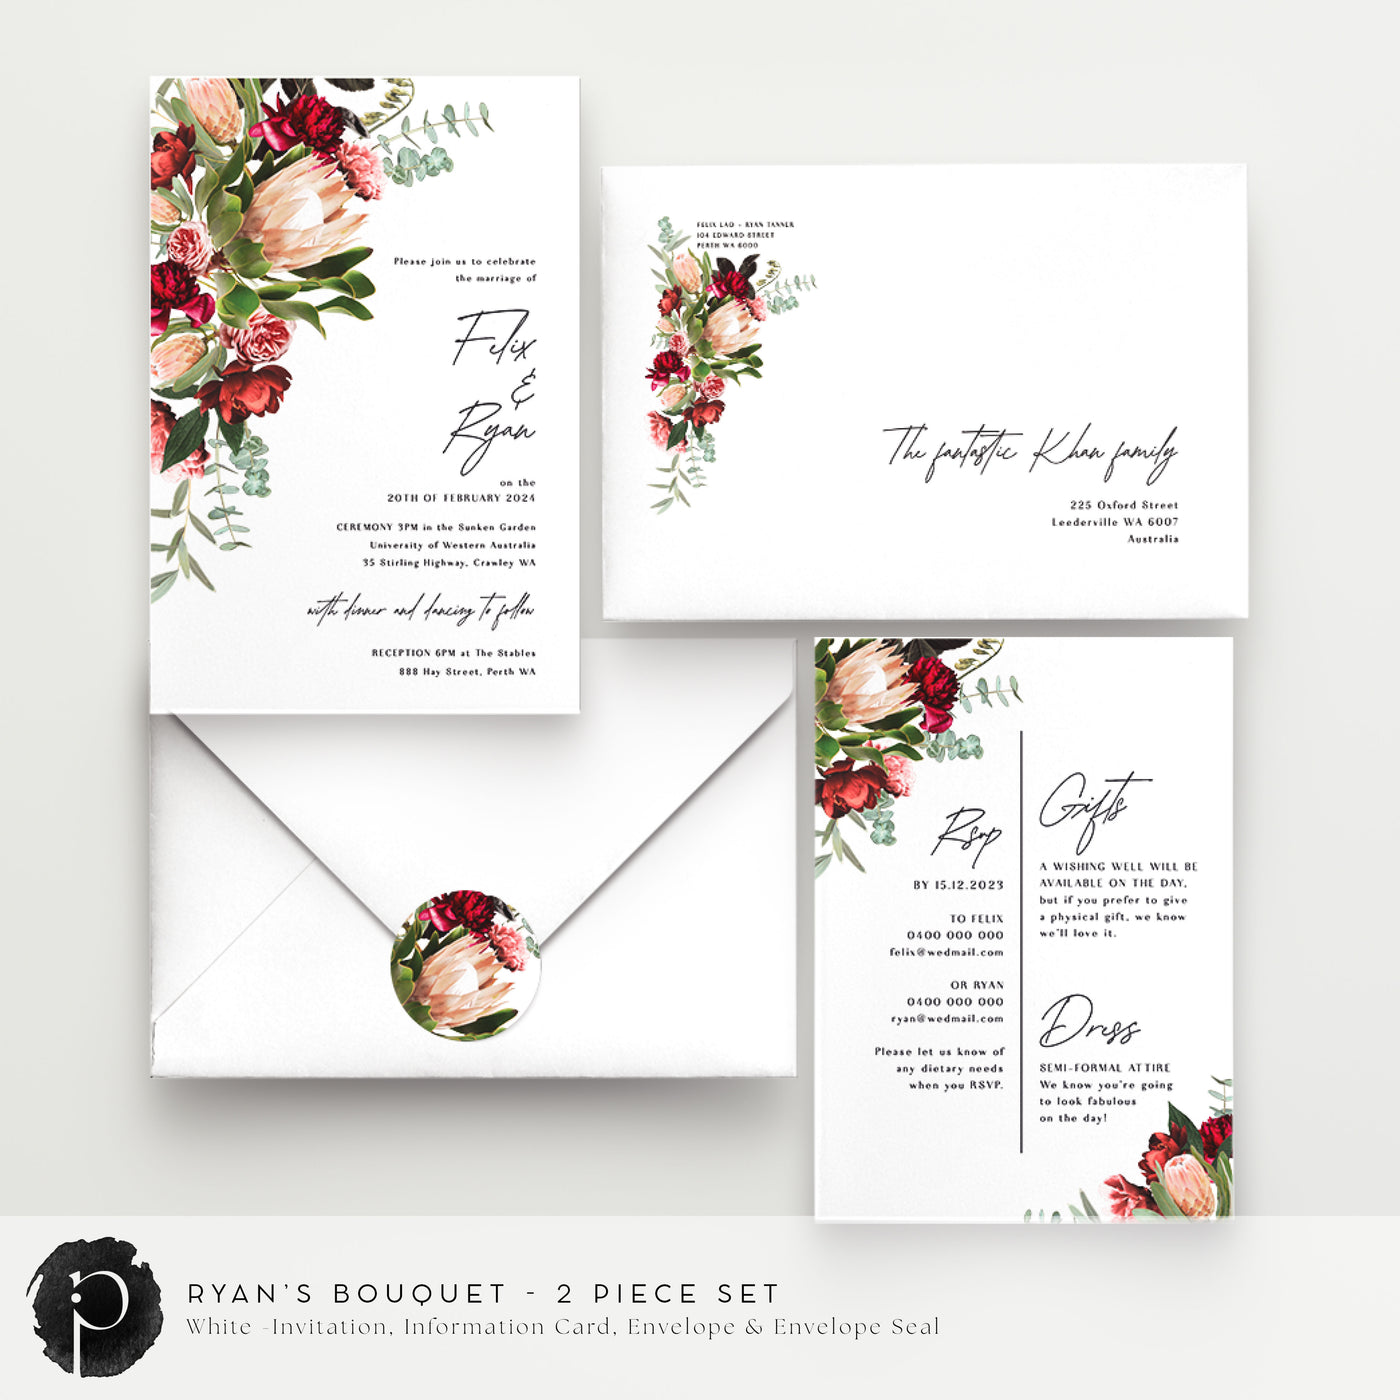 Ryan's Bouquet - Wedding Invitation & Information/Details Card Set